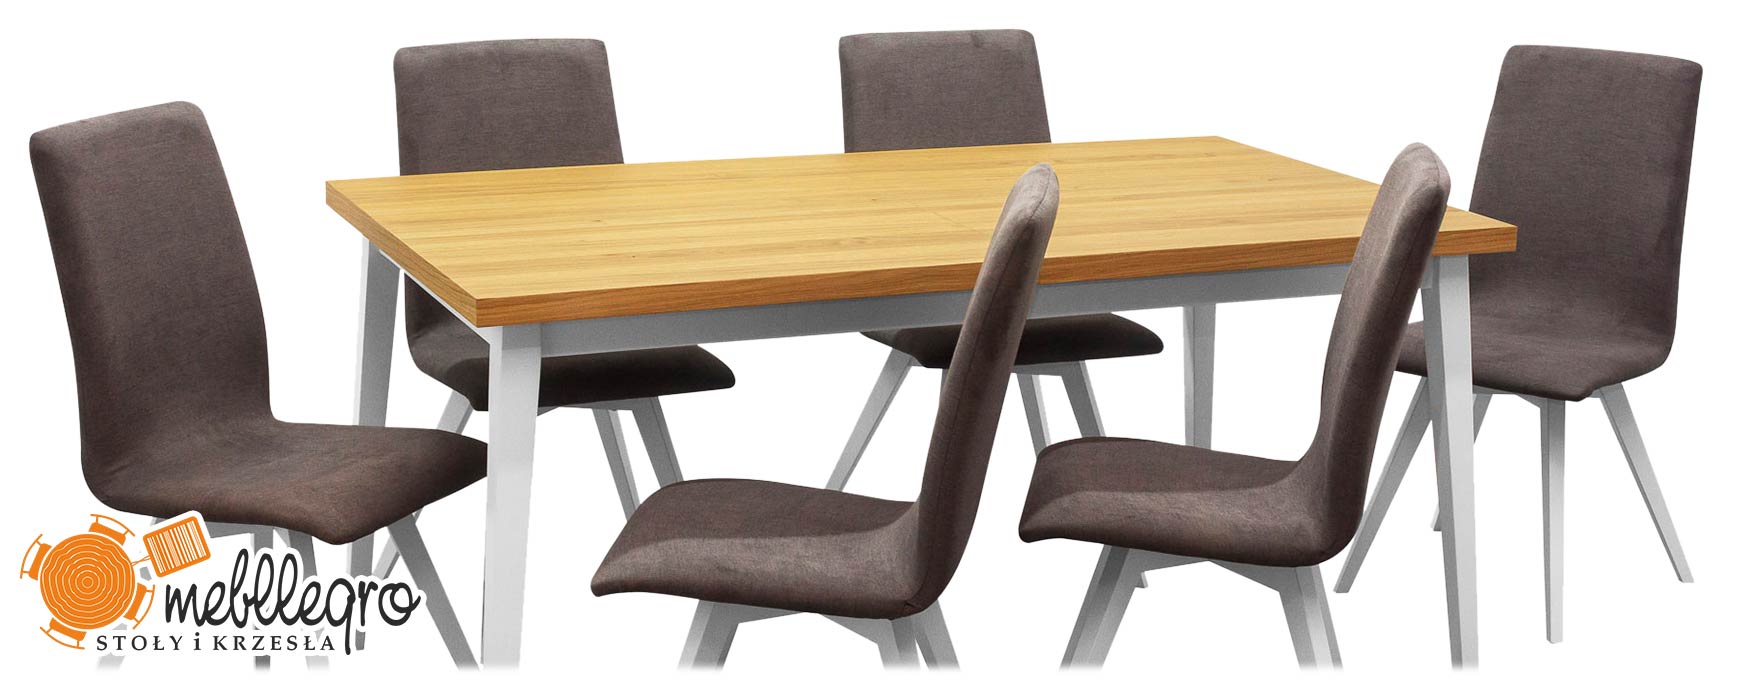 Stół prostokątny z szarymi krzesłami rozkładany dębowy zestaw z białymi nogami